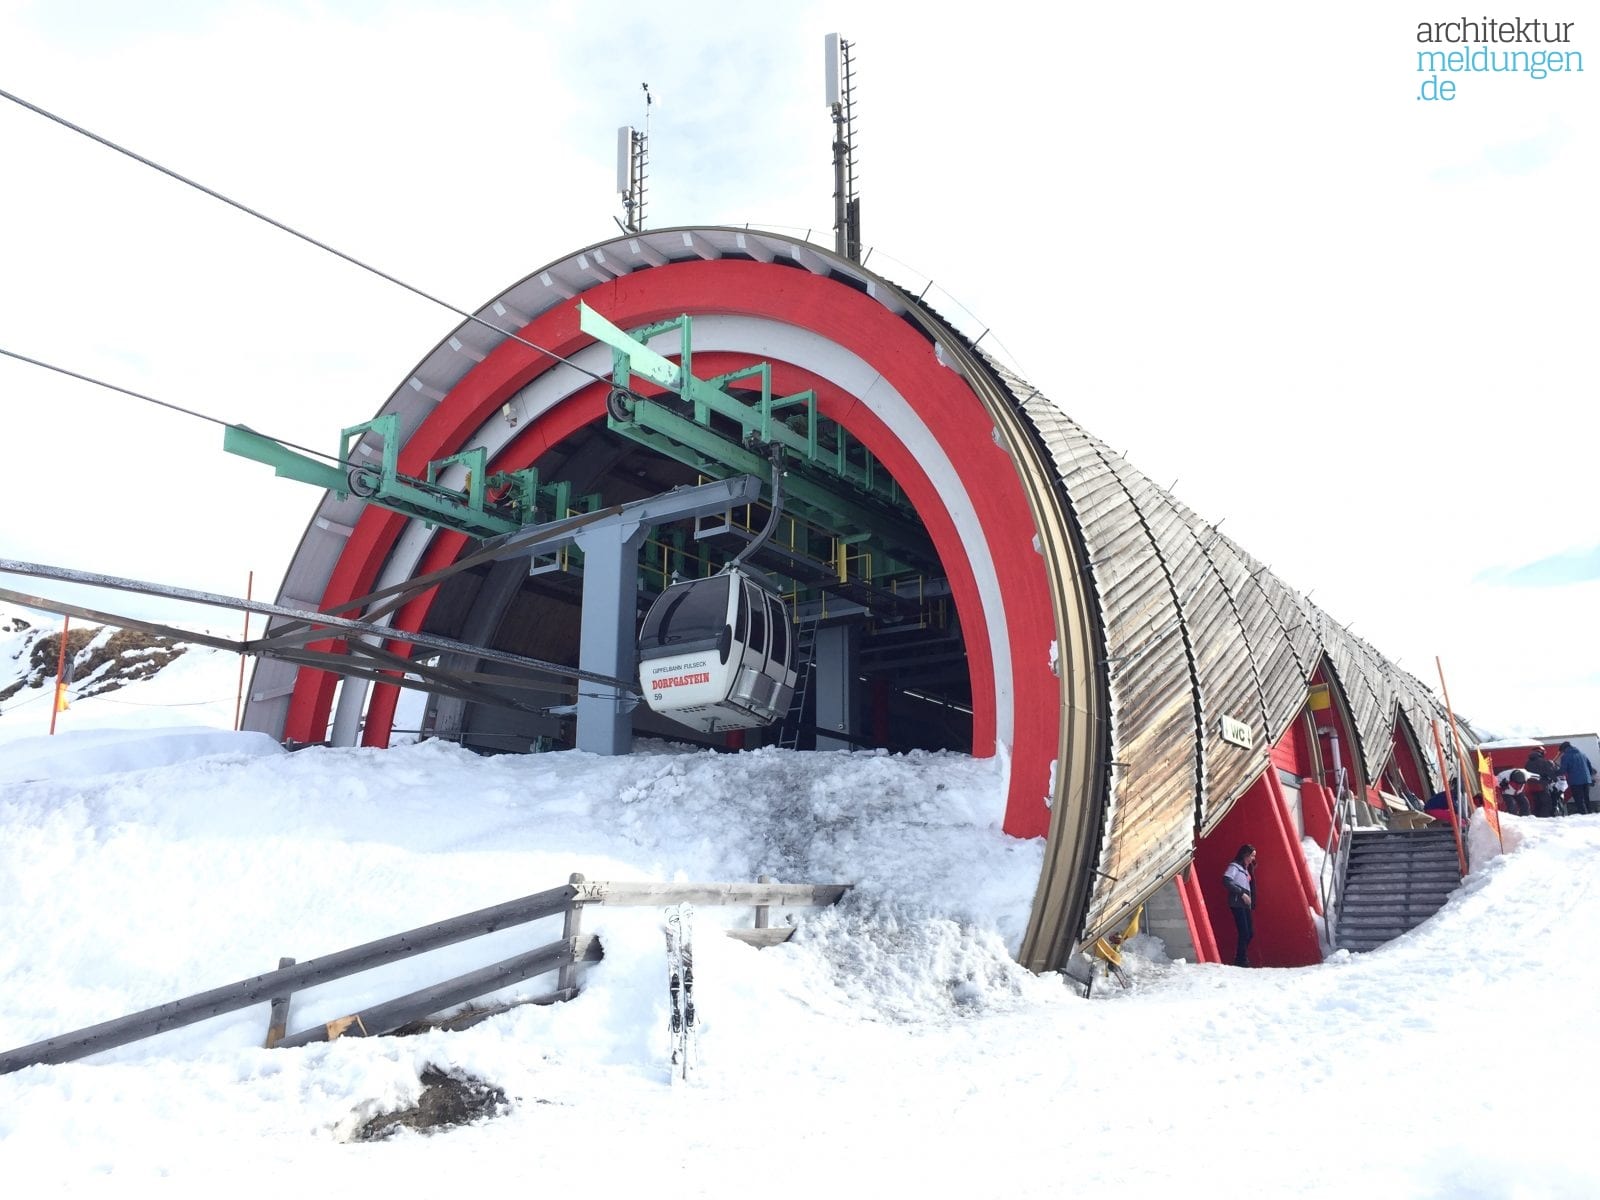 Konstruktiver Holzbau auf 2.000 m Höhe: Die Bergstation der Gipfelbahn Fulseck im Skigebiet Dorfgastein-Großarltal (Foto: Eric Sturm)